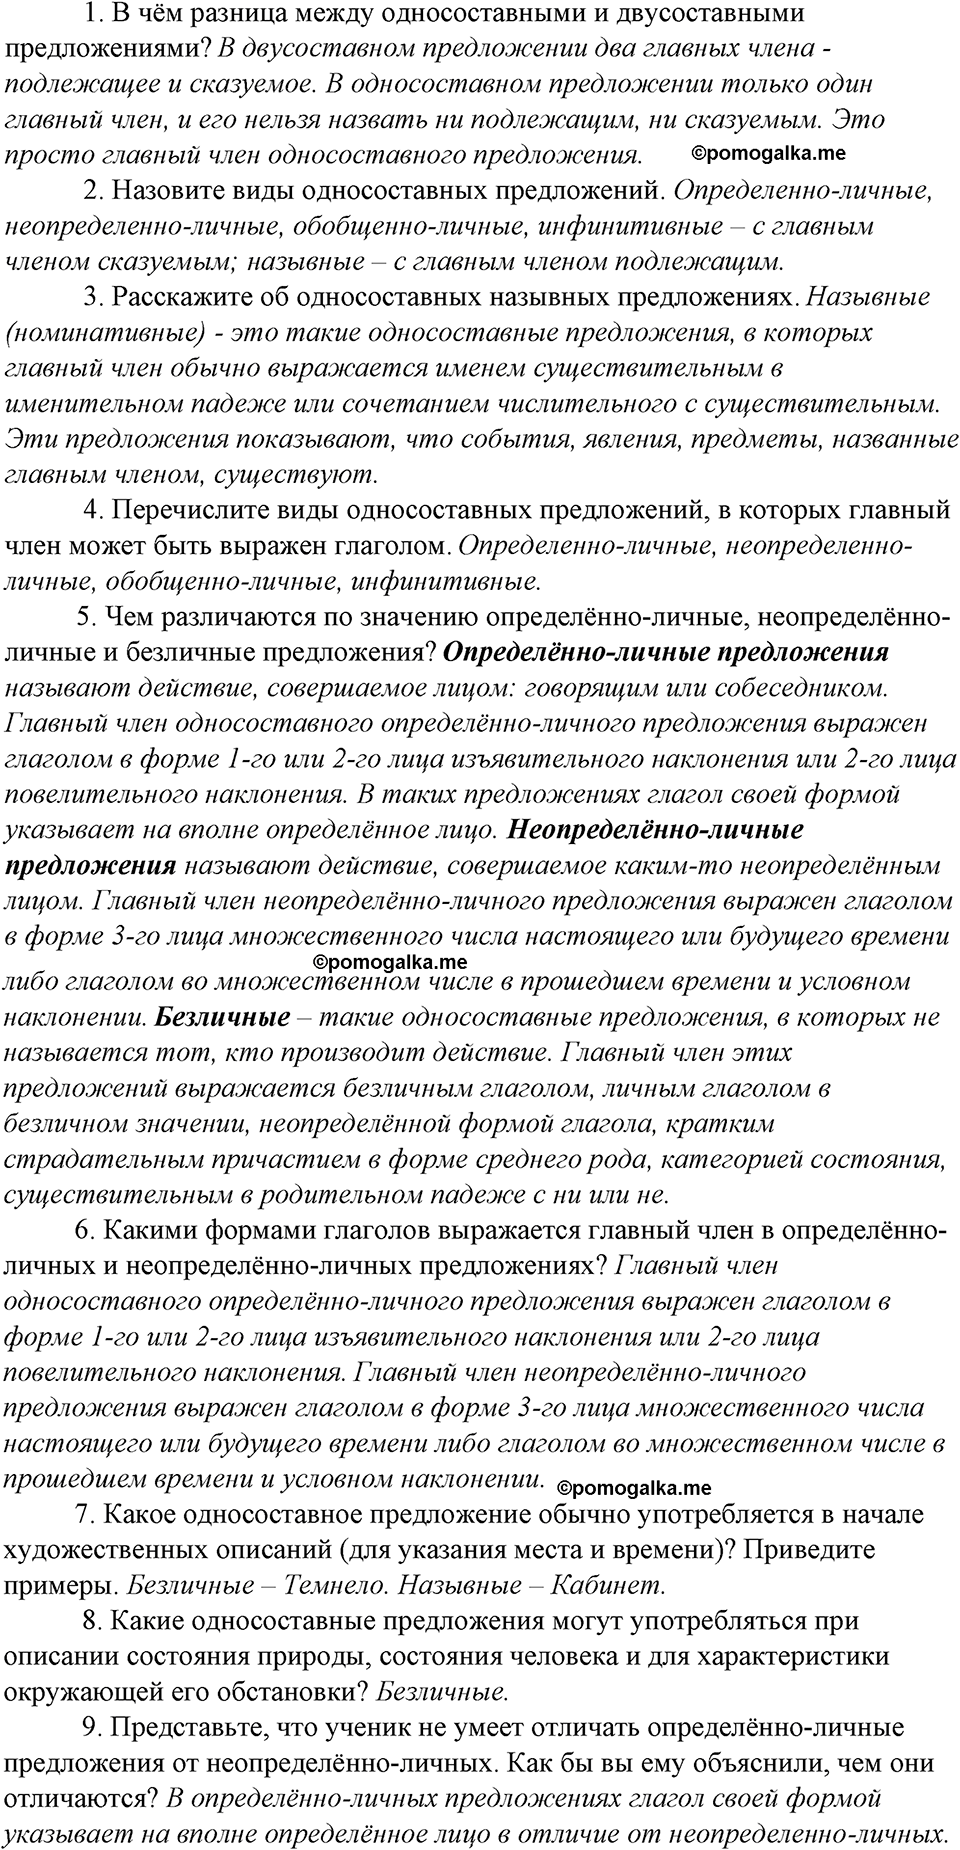 страница 118 контрольные вопросы и задания русский язык 8 класс Тростенцова, Ладыженская 2014 год